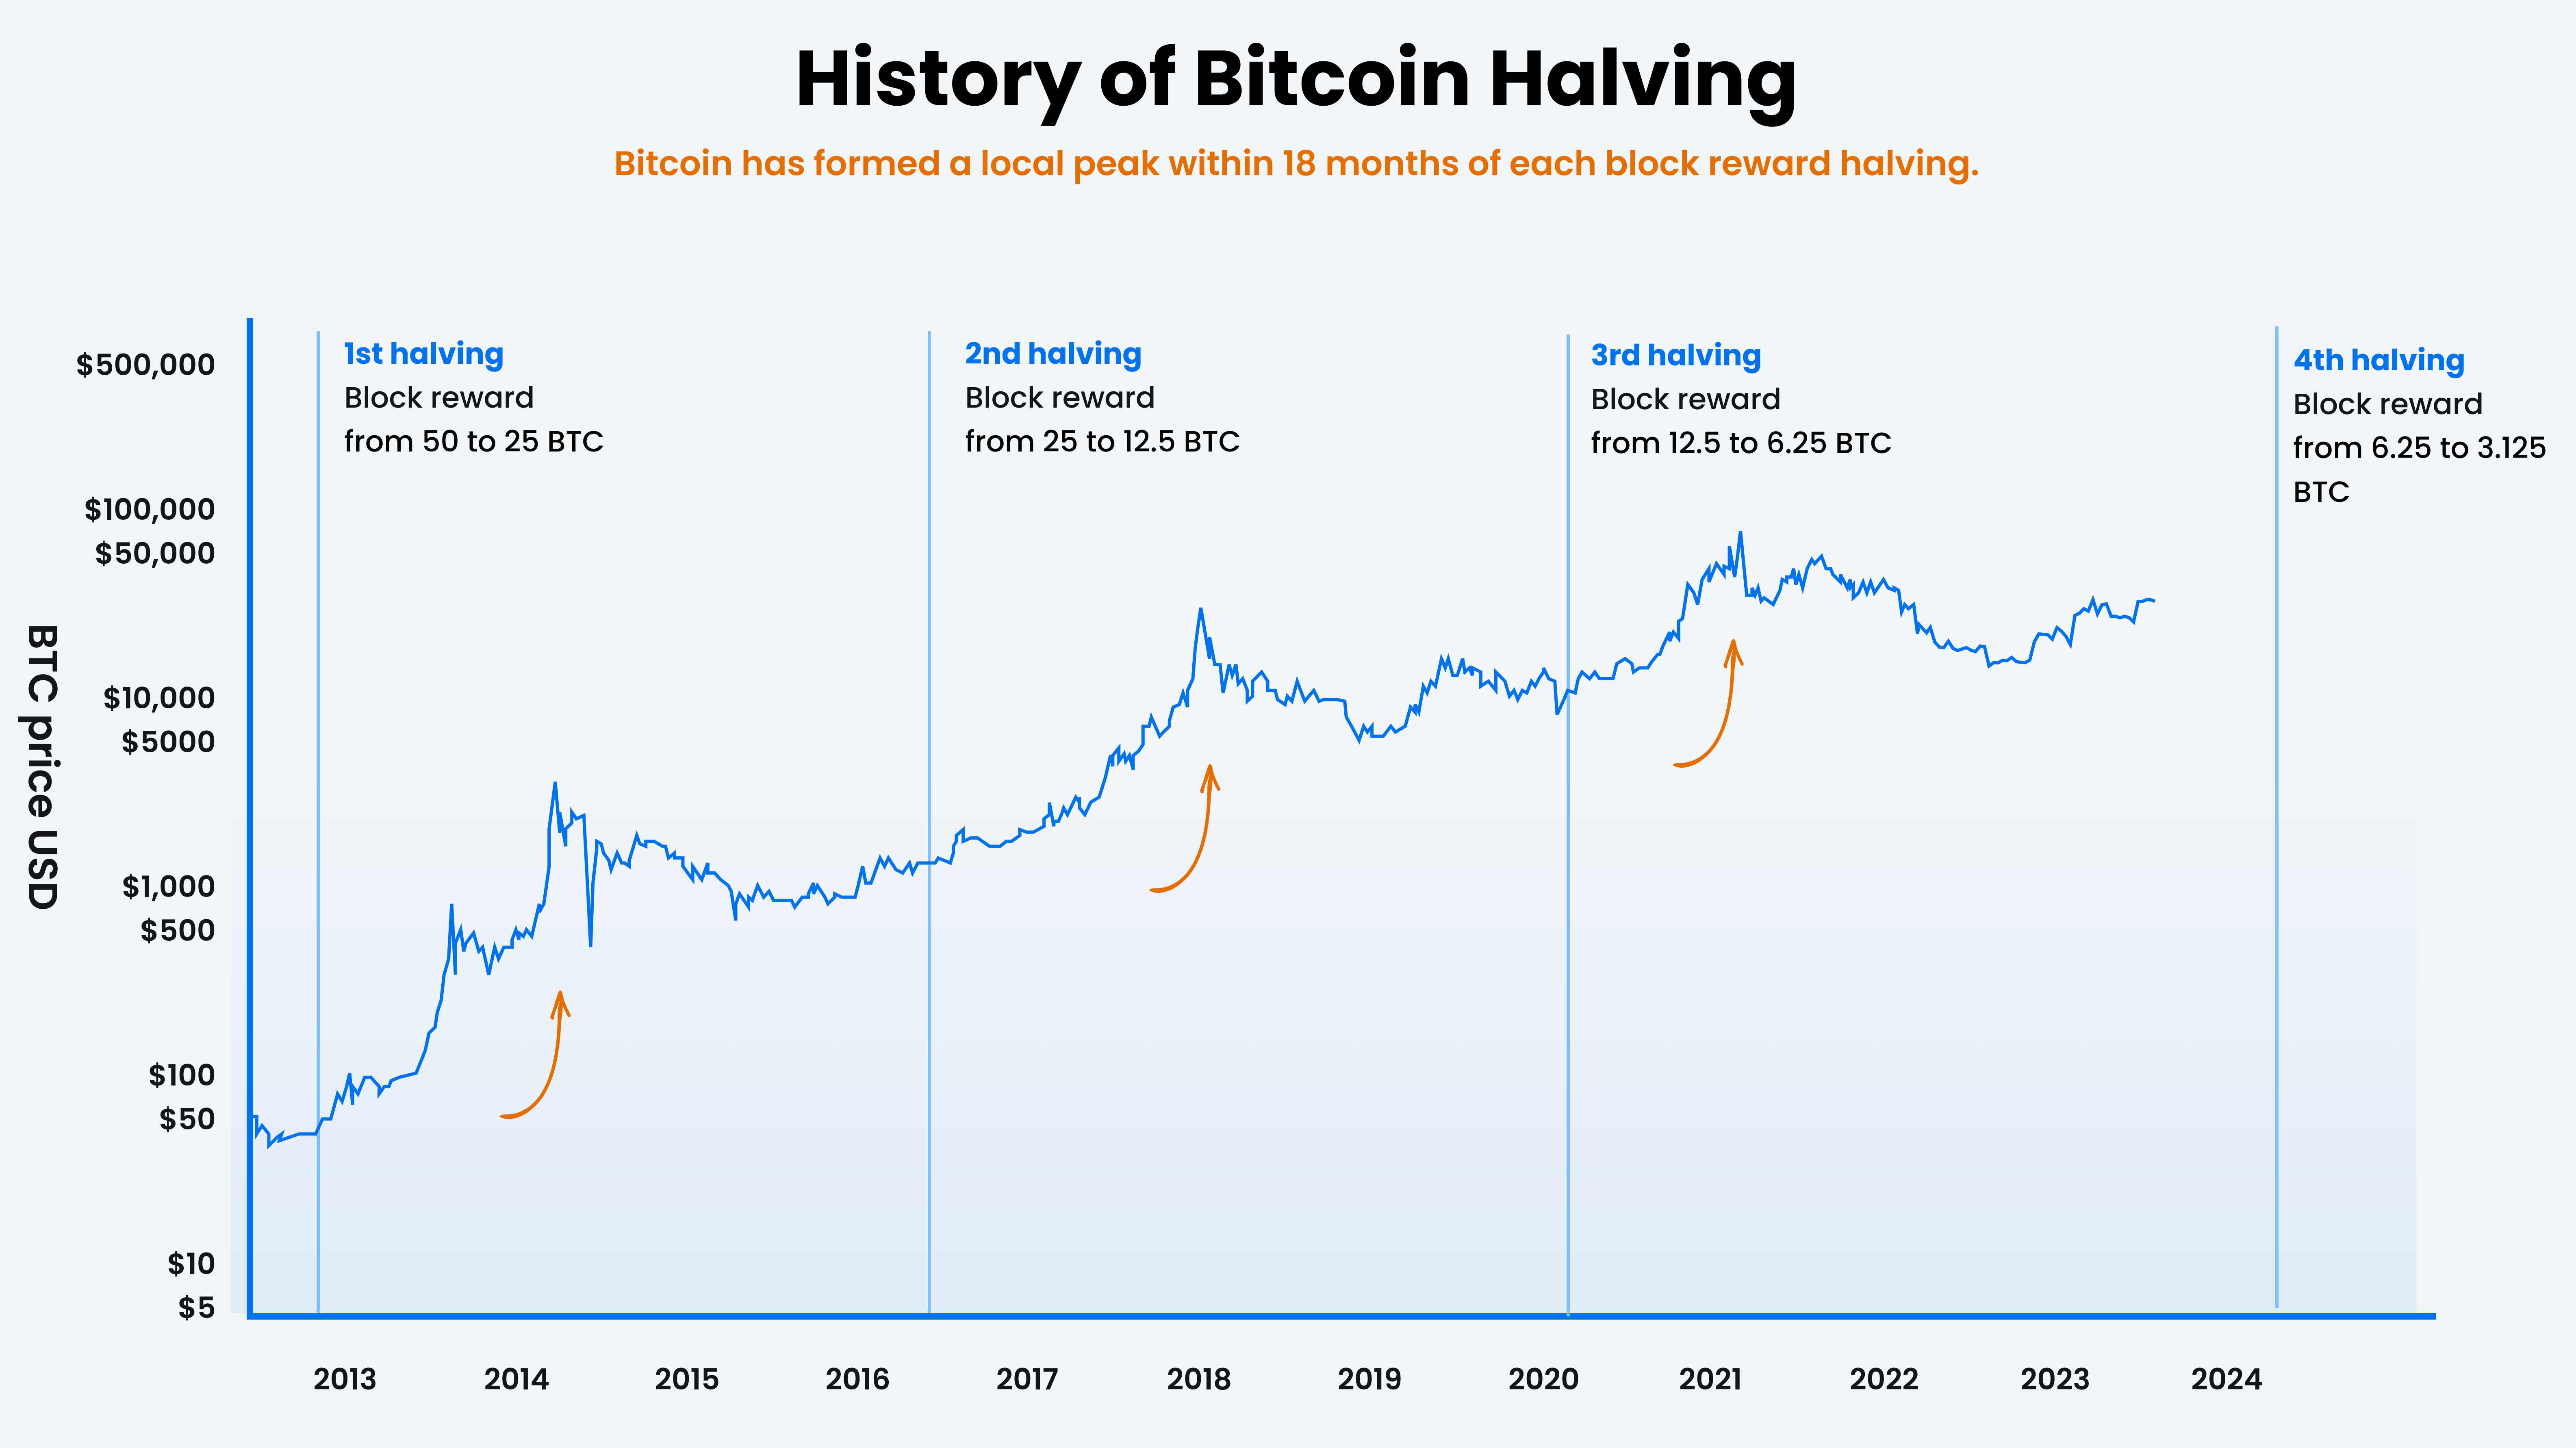 Grafik Sejarah Bitcoin halving. Sumber: Tokocrypto.